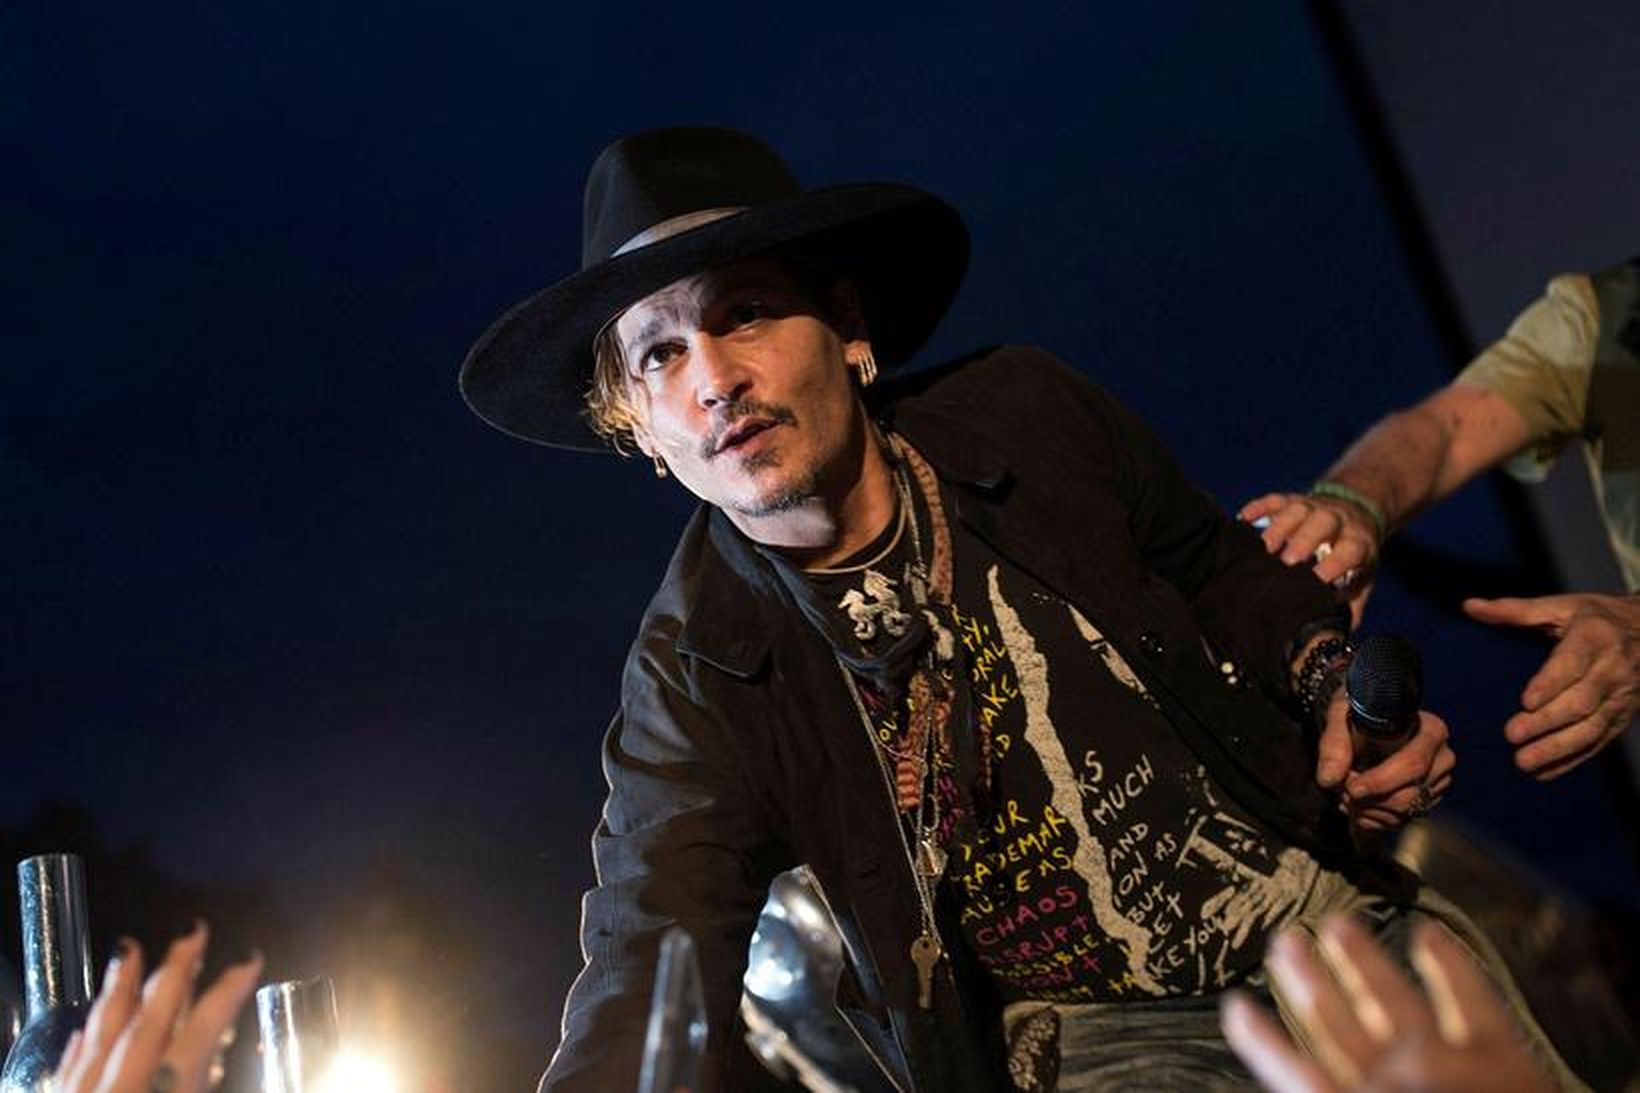 Johnny Depp kynnir kvikmynd sína The Libertine á Glastonbury-hátíðinni.